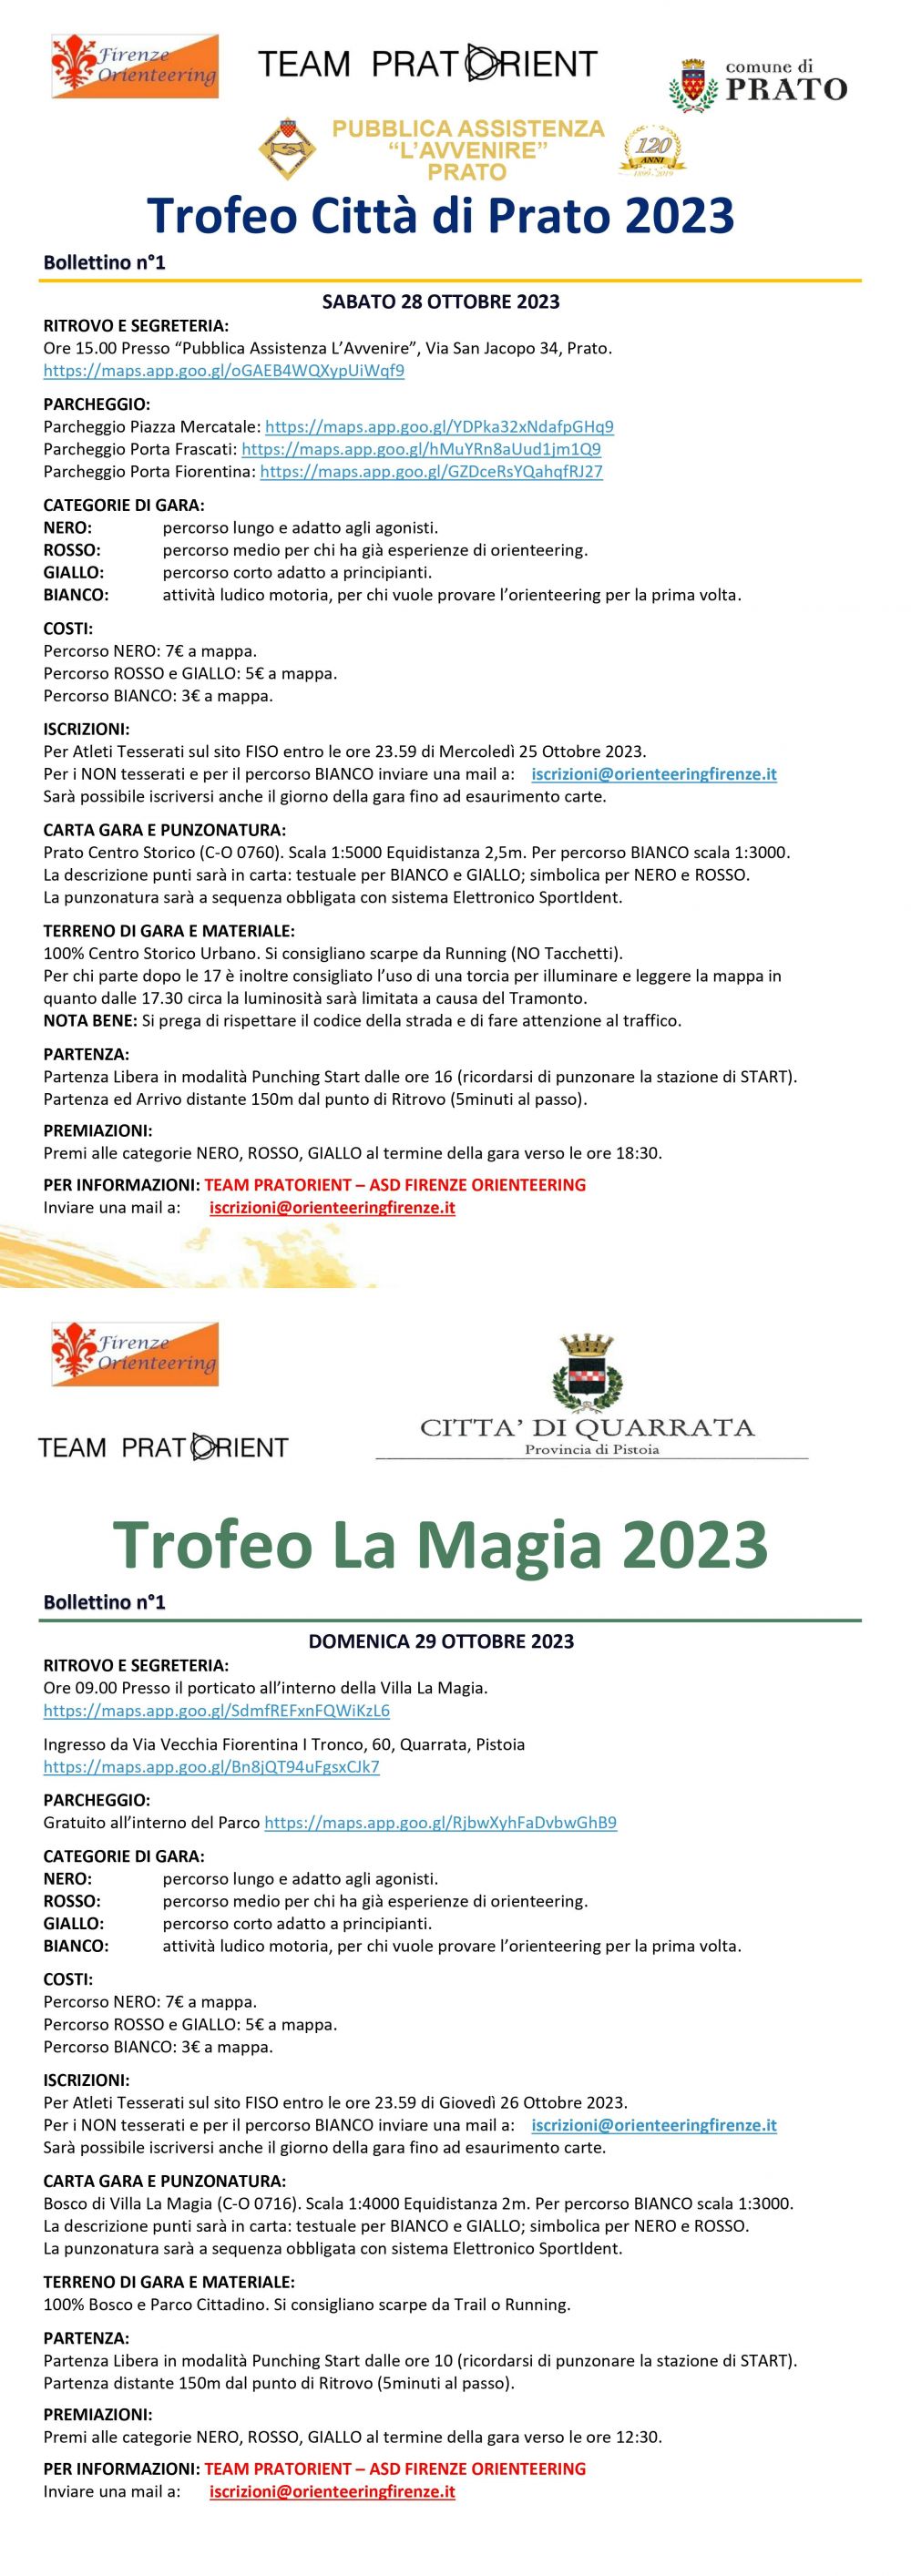 Trofeo Città di Prato 2023 e Trofeo Villa La Magia 2023